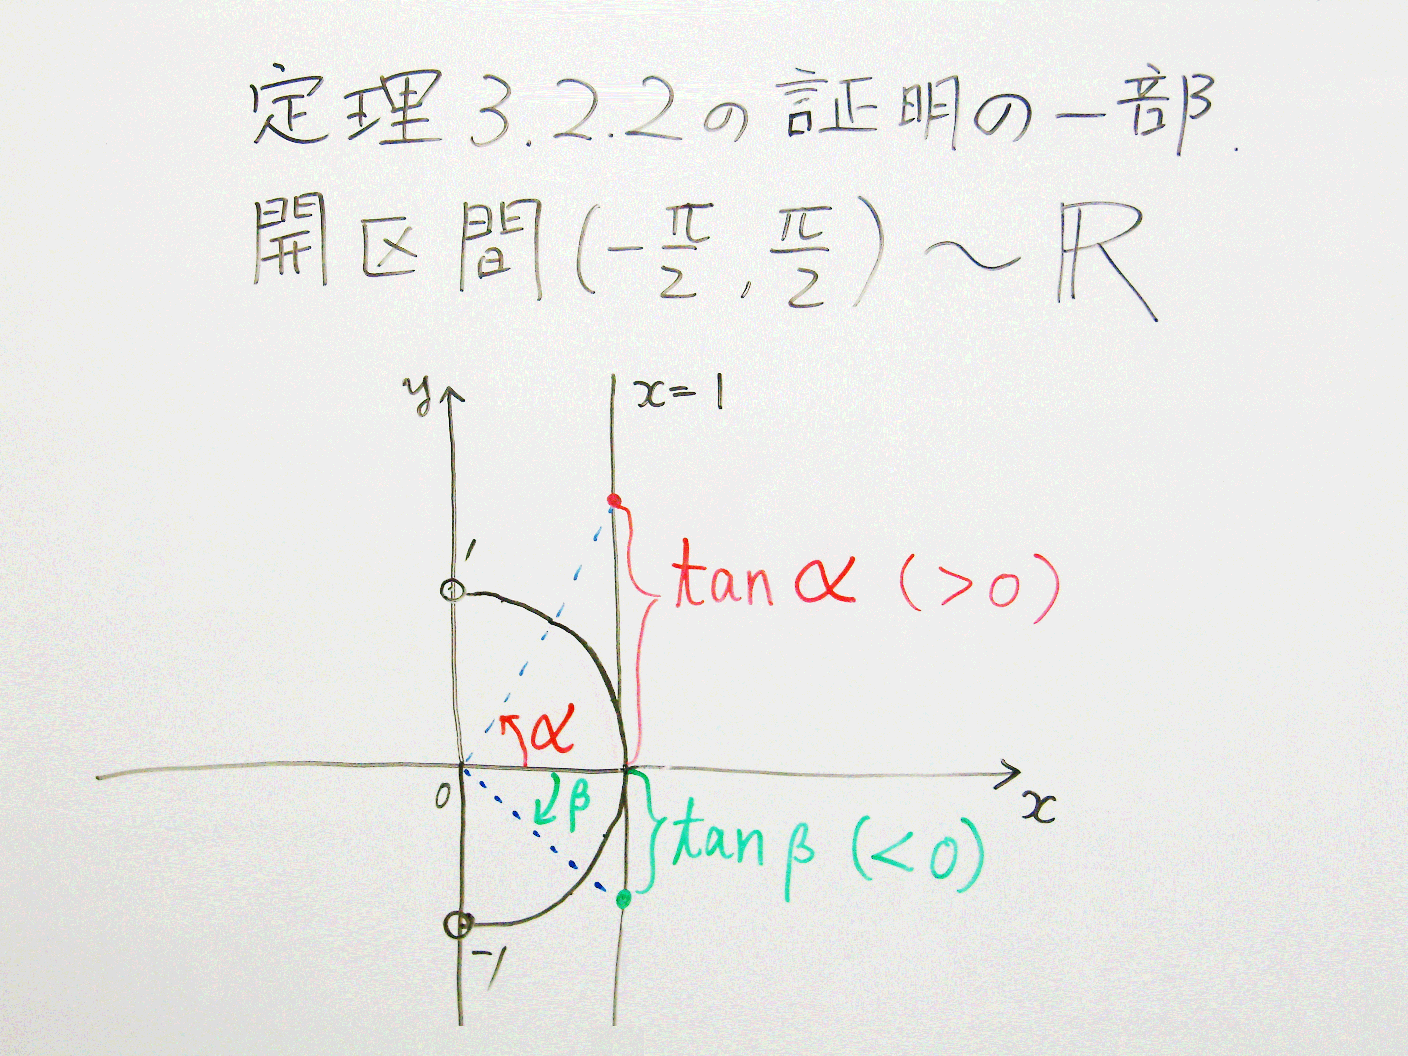 鈴木登志雄『例題で学ぶ集合と論理』定理3.2.2a